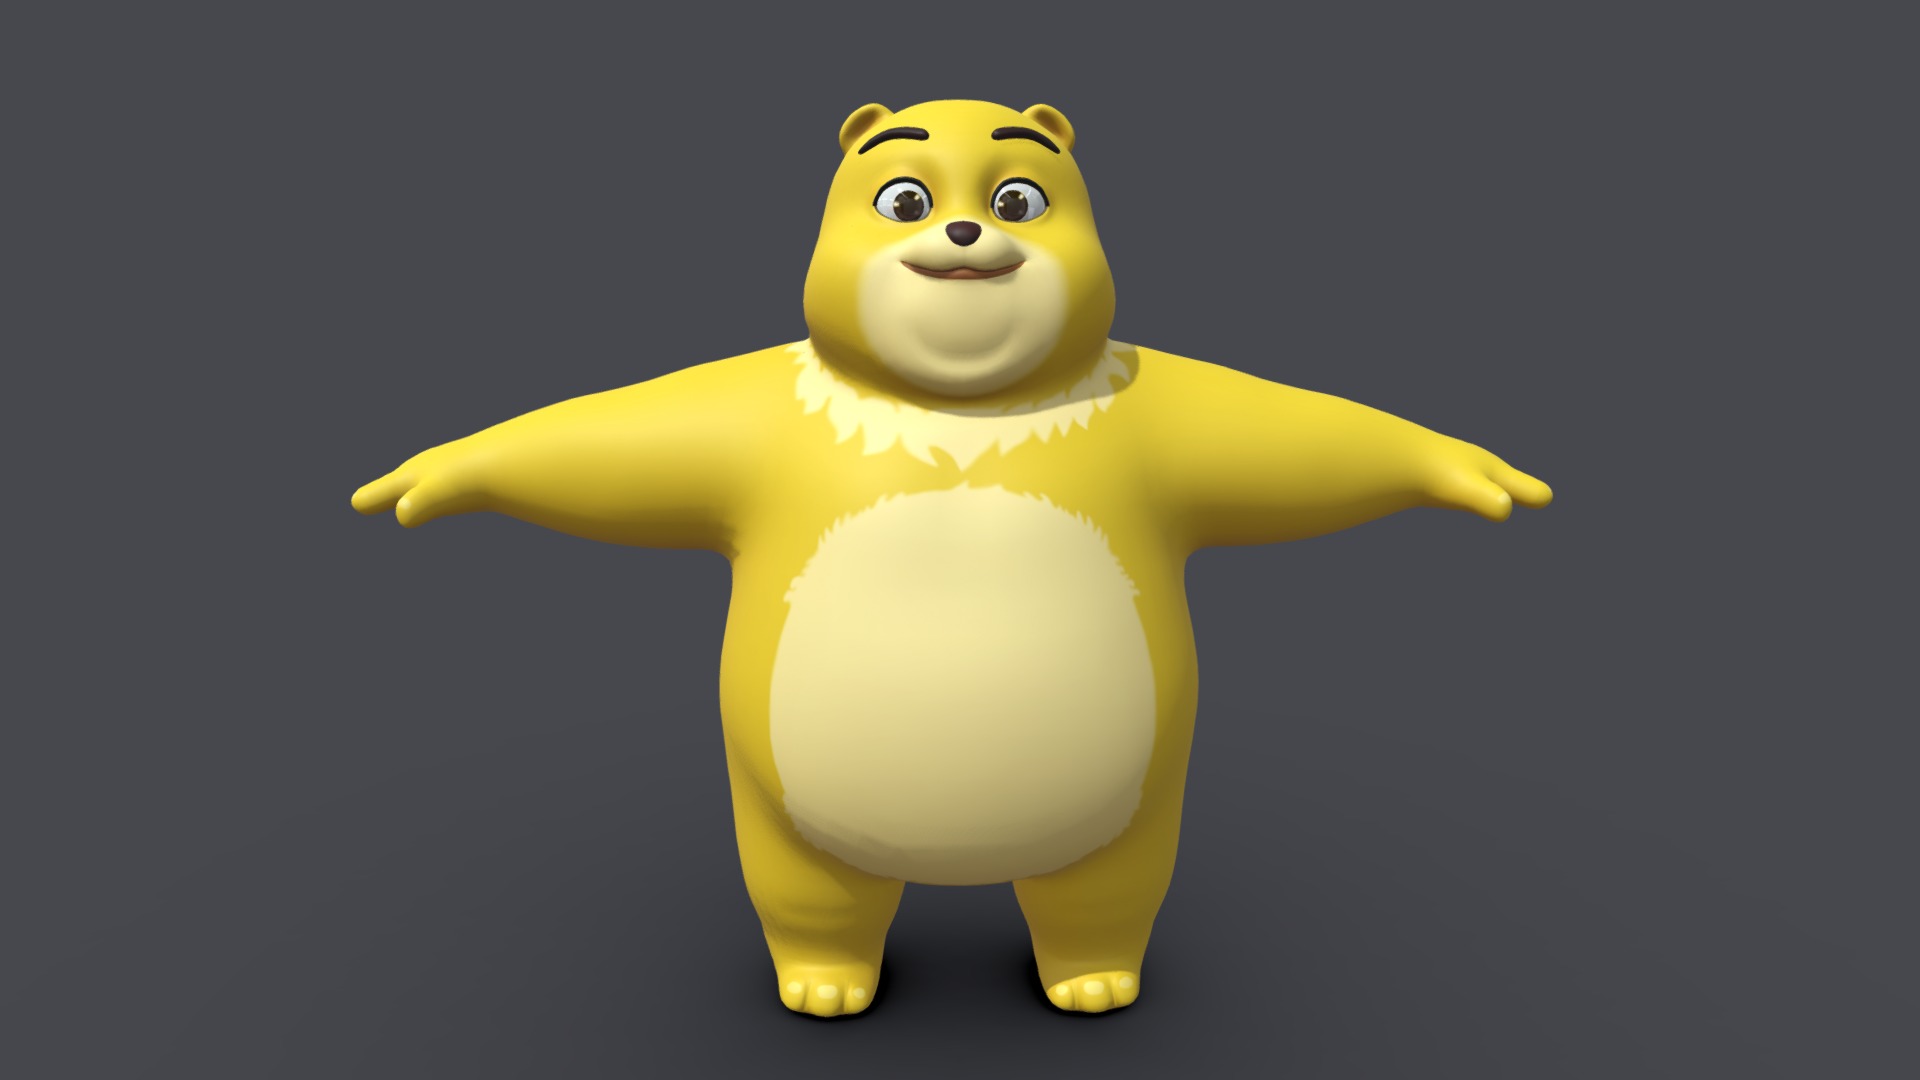 3D model Asset – Cartoons – Character – Bear Yellow – Rig - This is a 3D model of the Asset - Cartoons - Character - Bear Yellow - Rig. The 3D model is about a yellow toy figure.